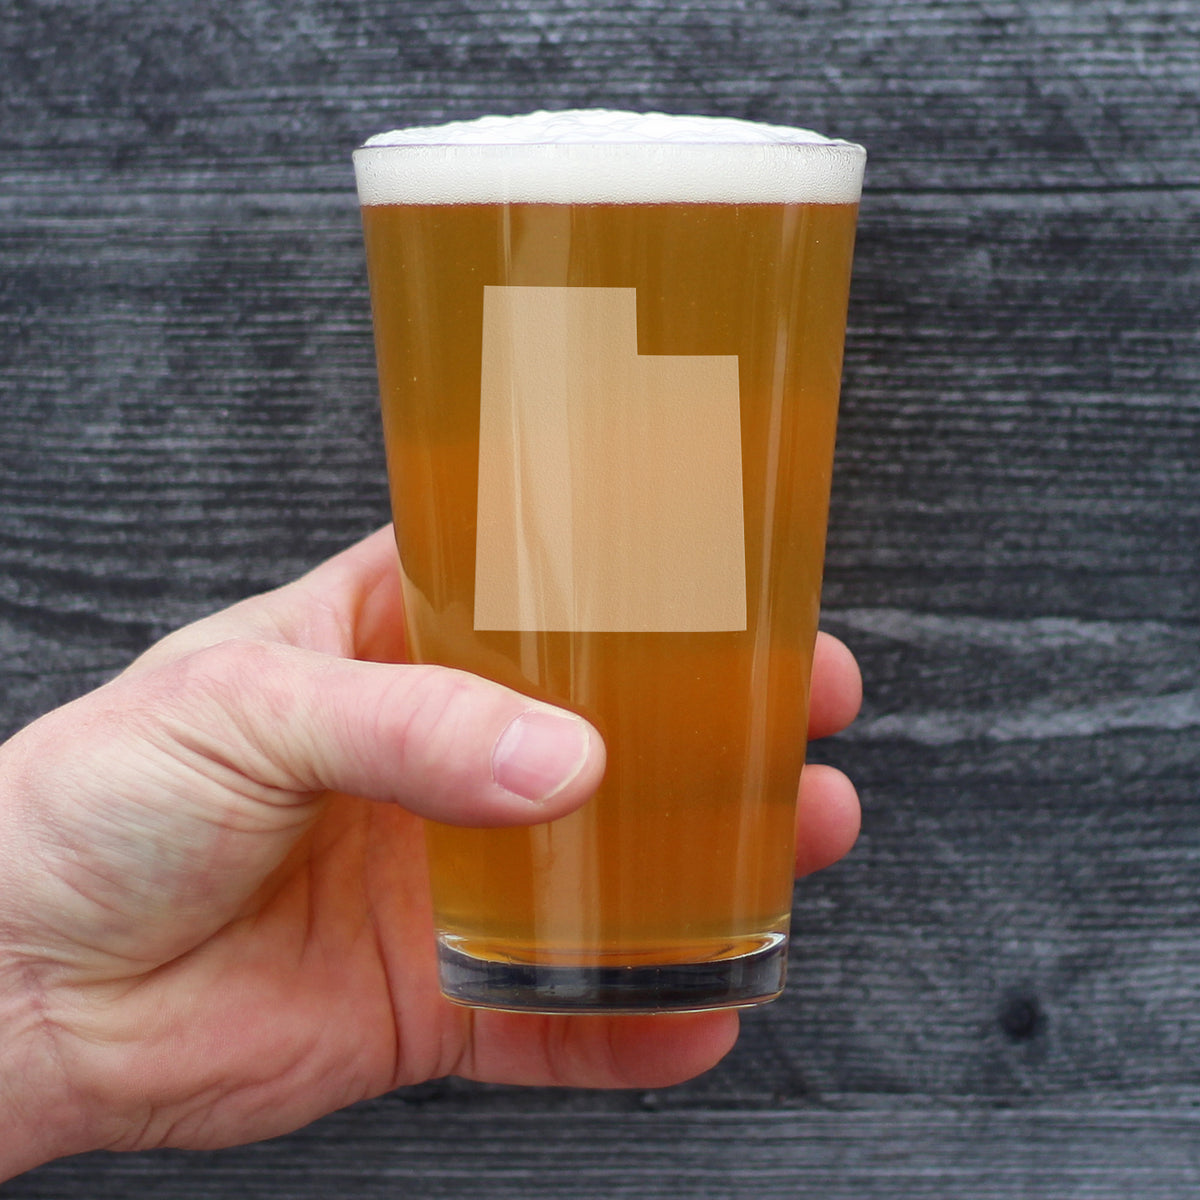 Utah State Outline Pint Glass for Beer - State Themed Drinking Decor and Gifts for Utahn Women &amp; Men - 16 Oz Glasses